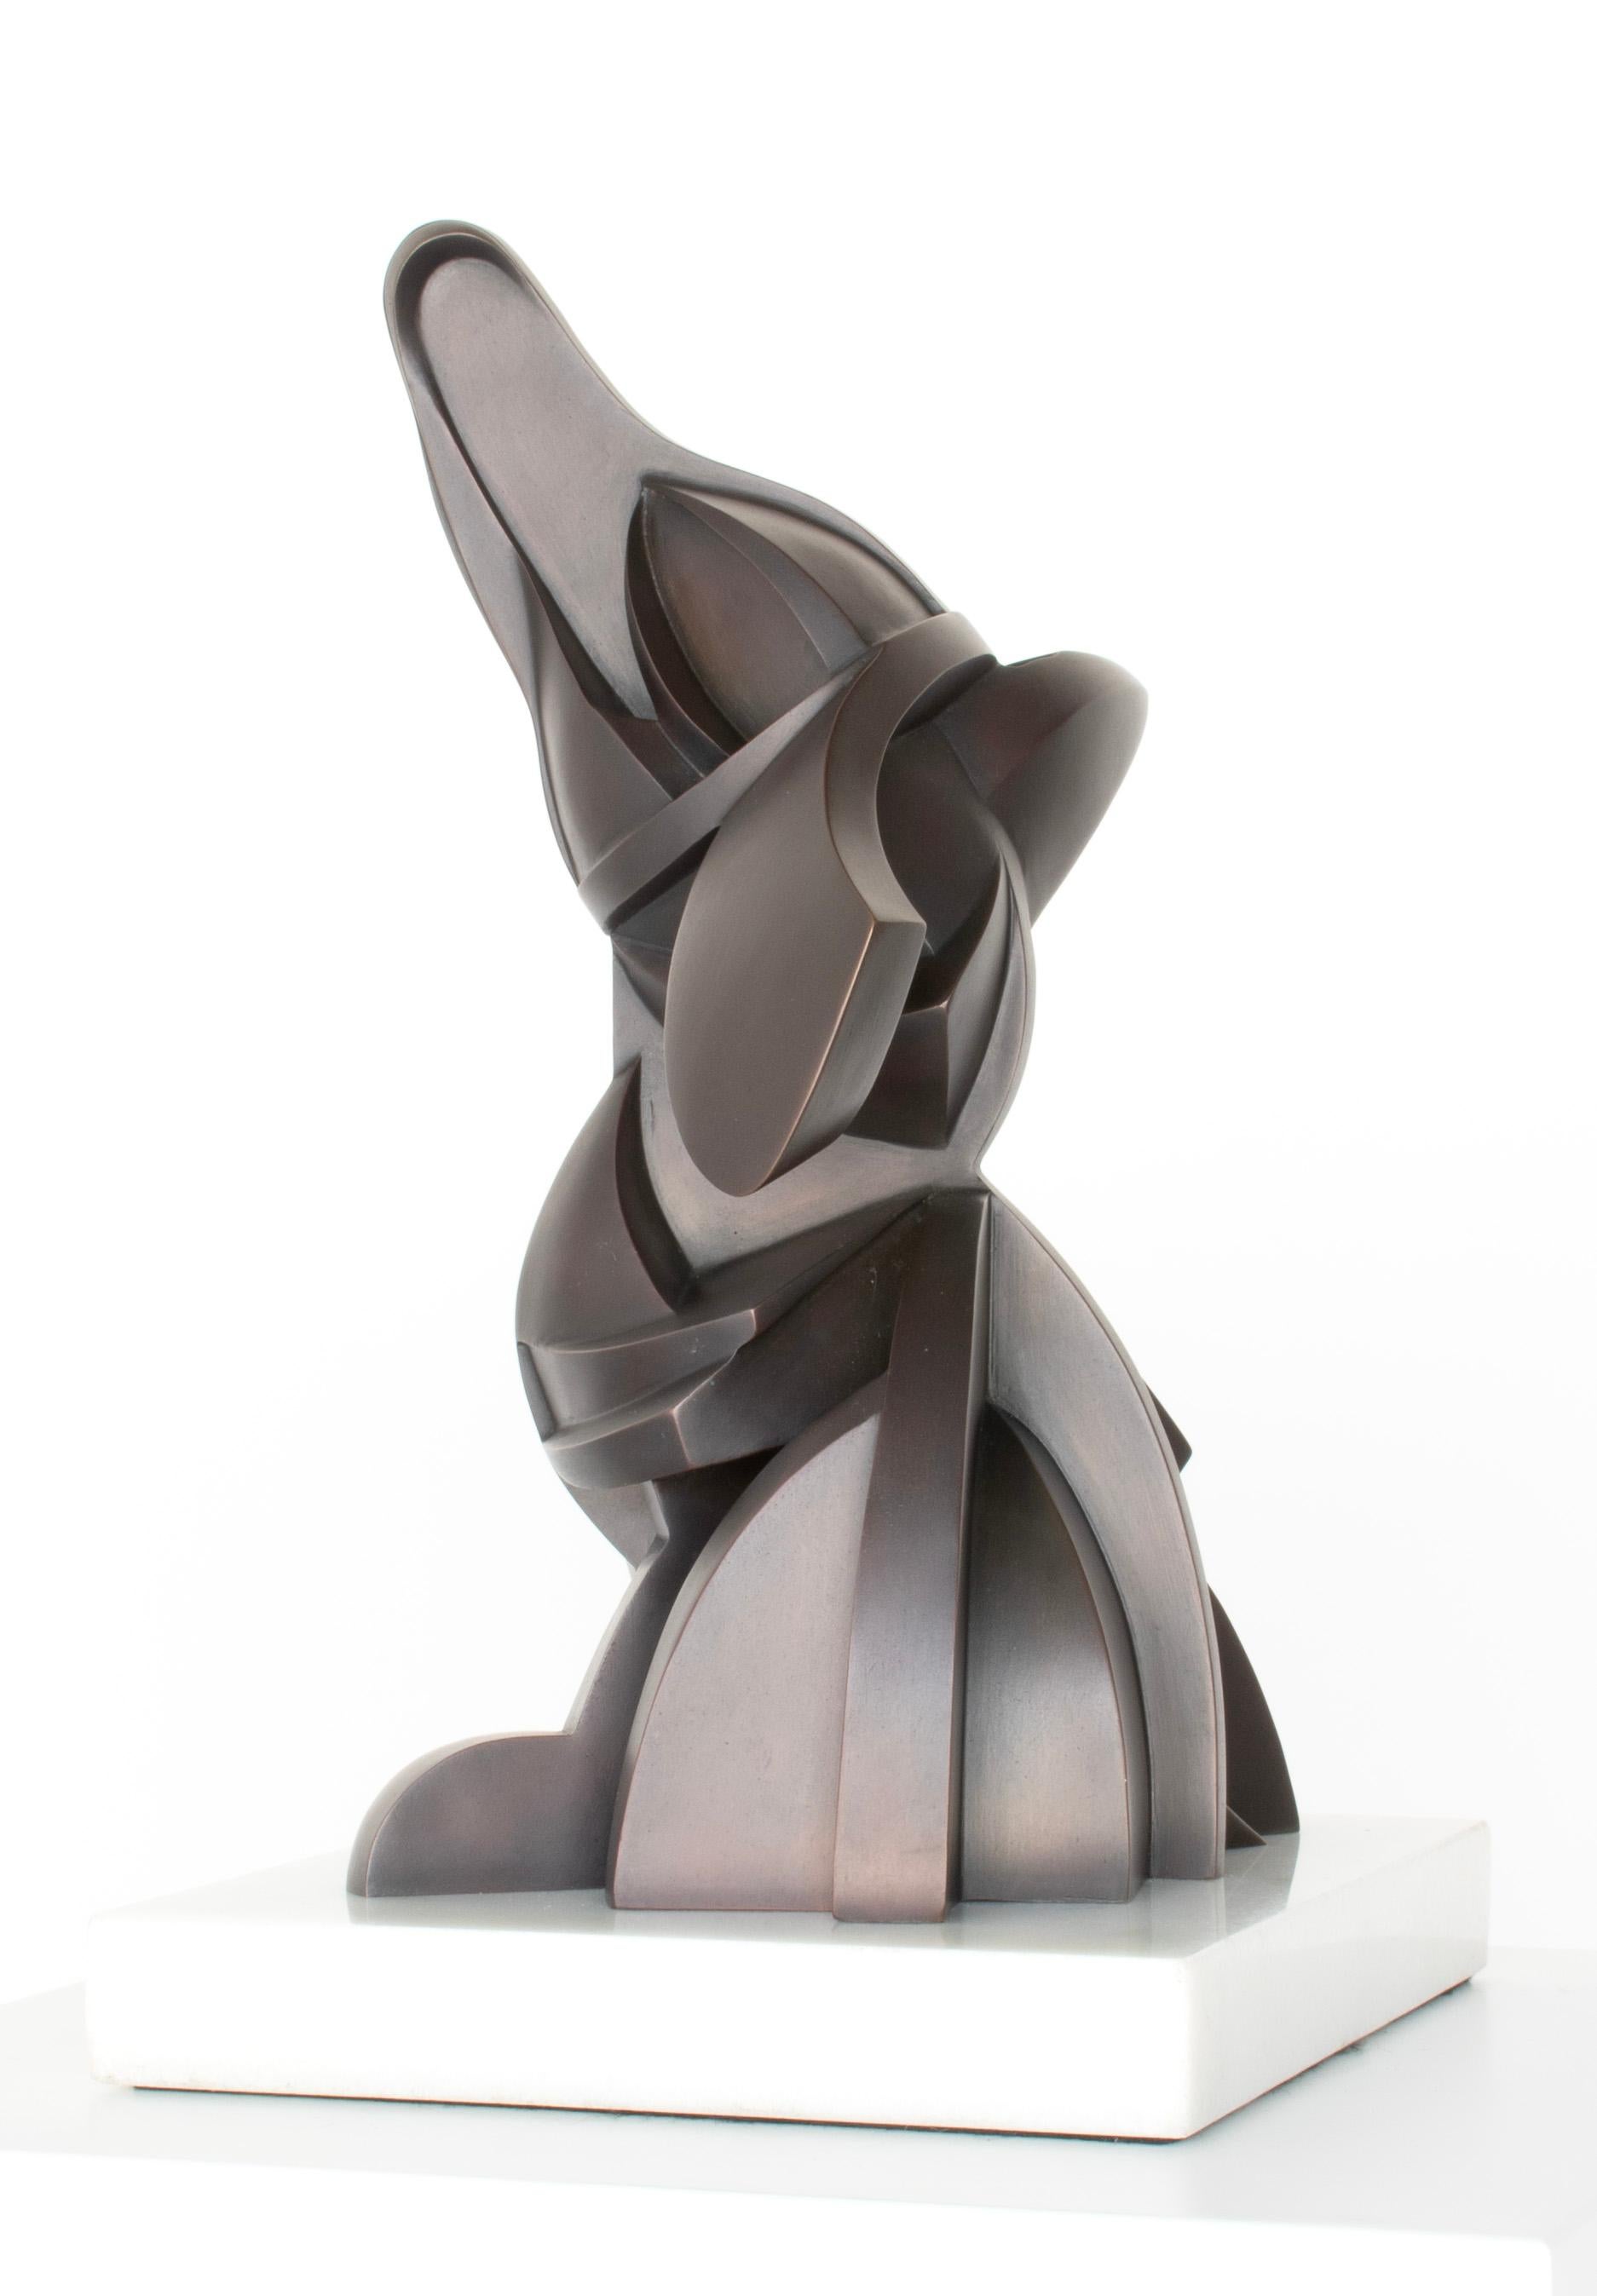 SCOOPS - Contemporary Sculpture by Alexander Krivosheiw